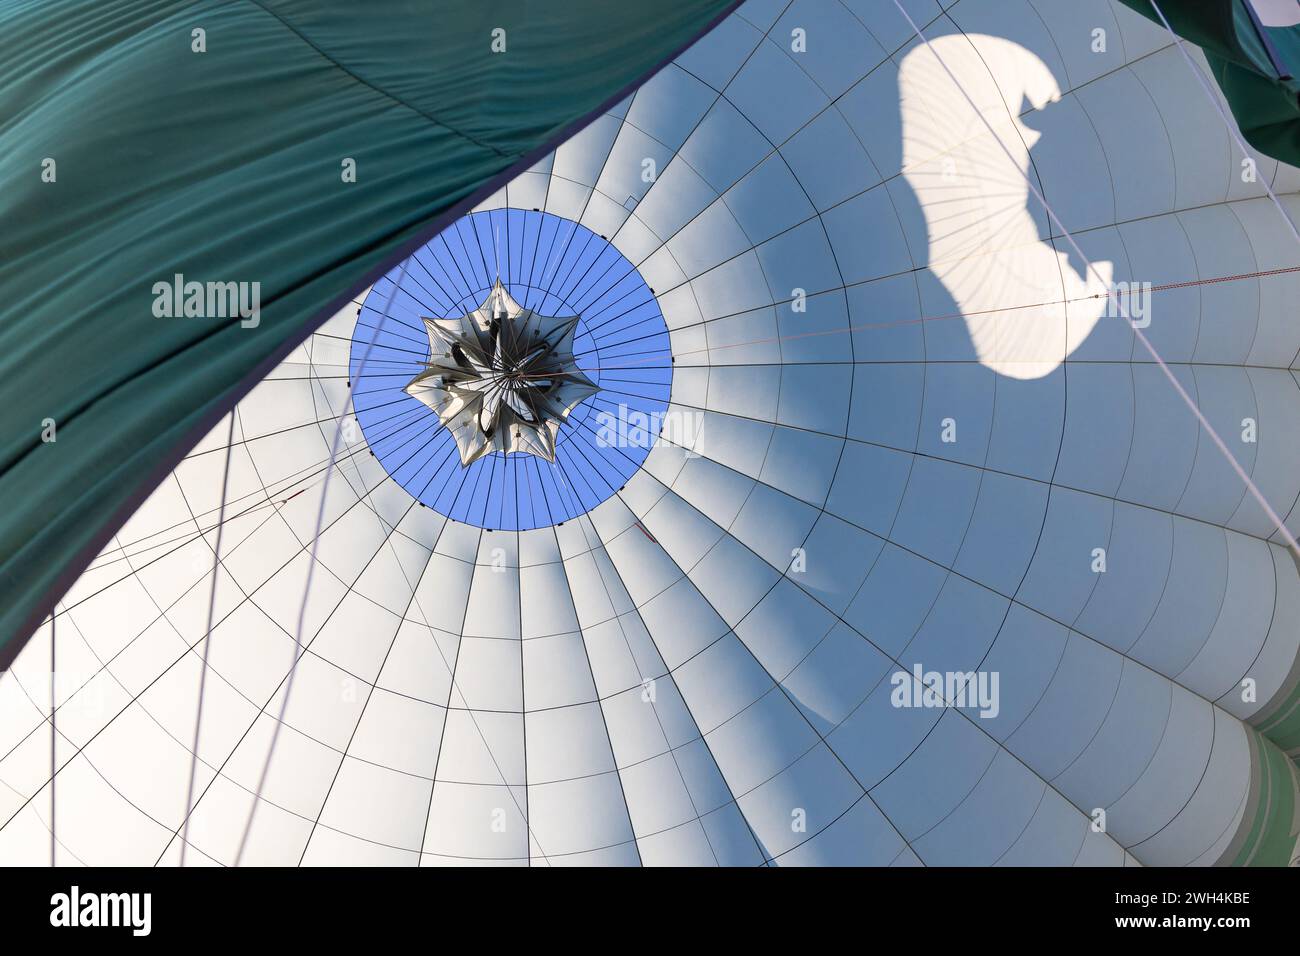 Naher Osten, Saudi-Arabien, Medina, Al-Ula. Blick in das Innere eines Heißluftballons. Stockfoto